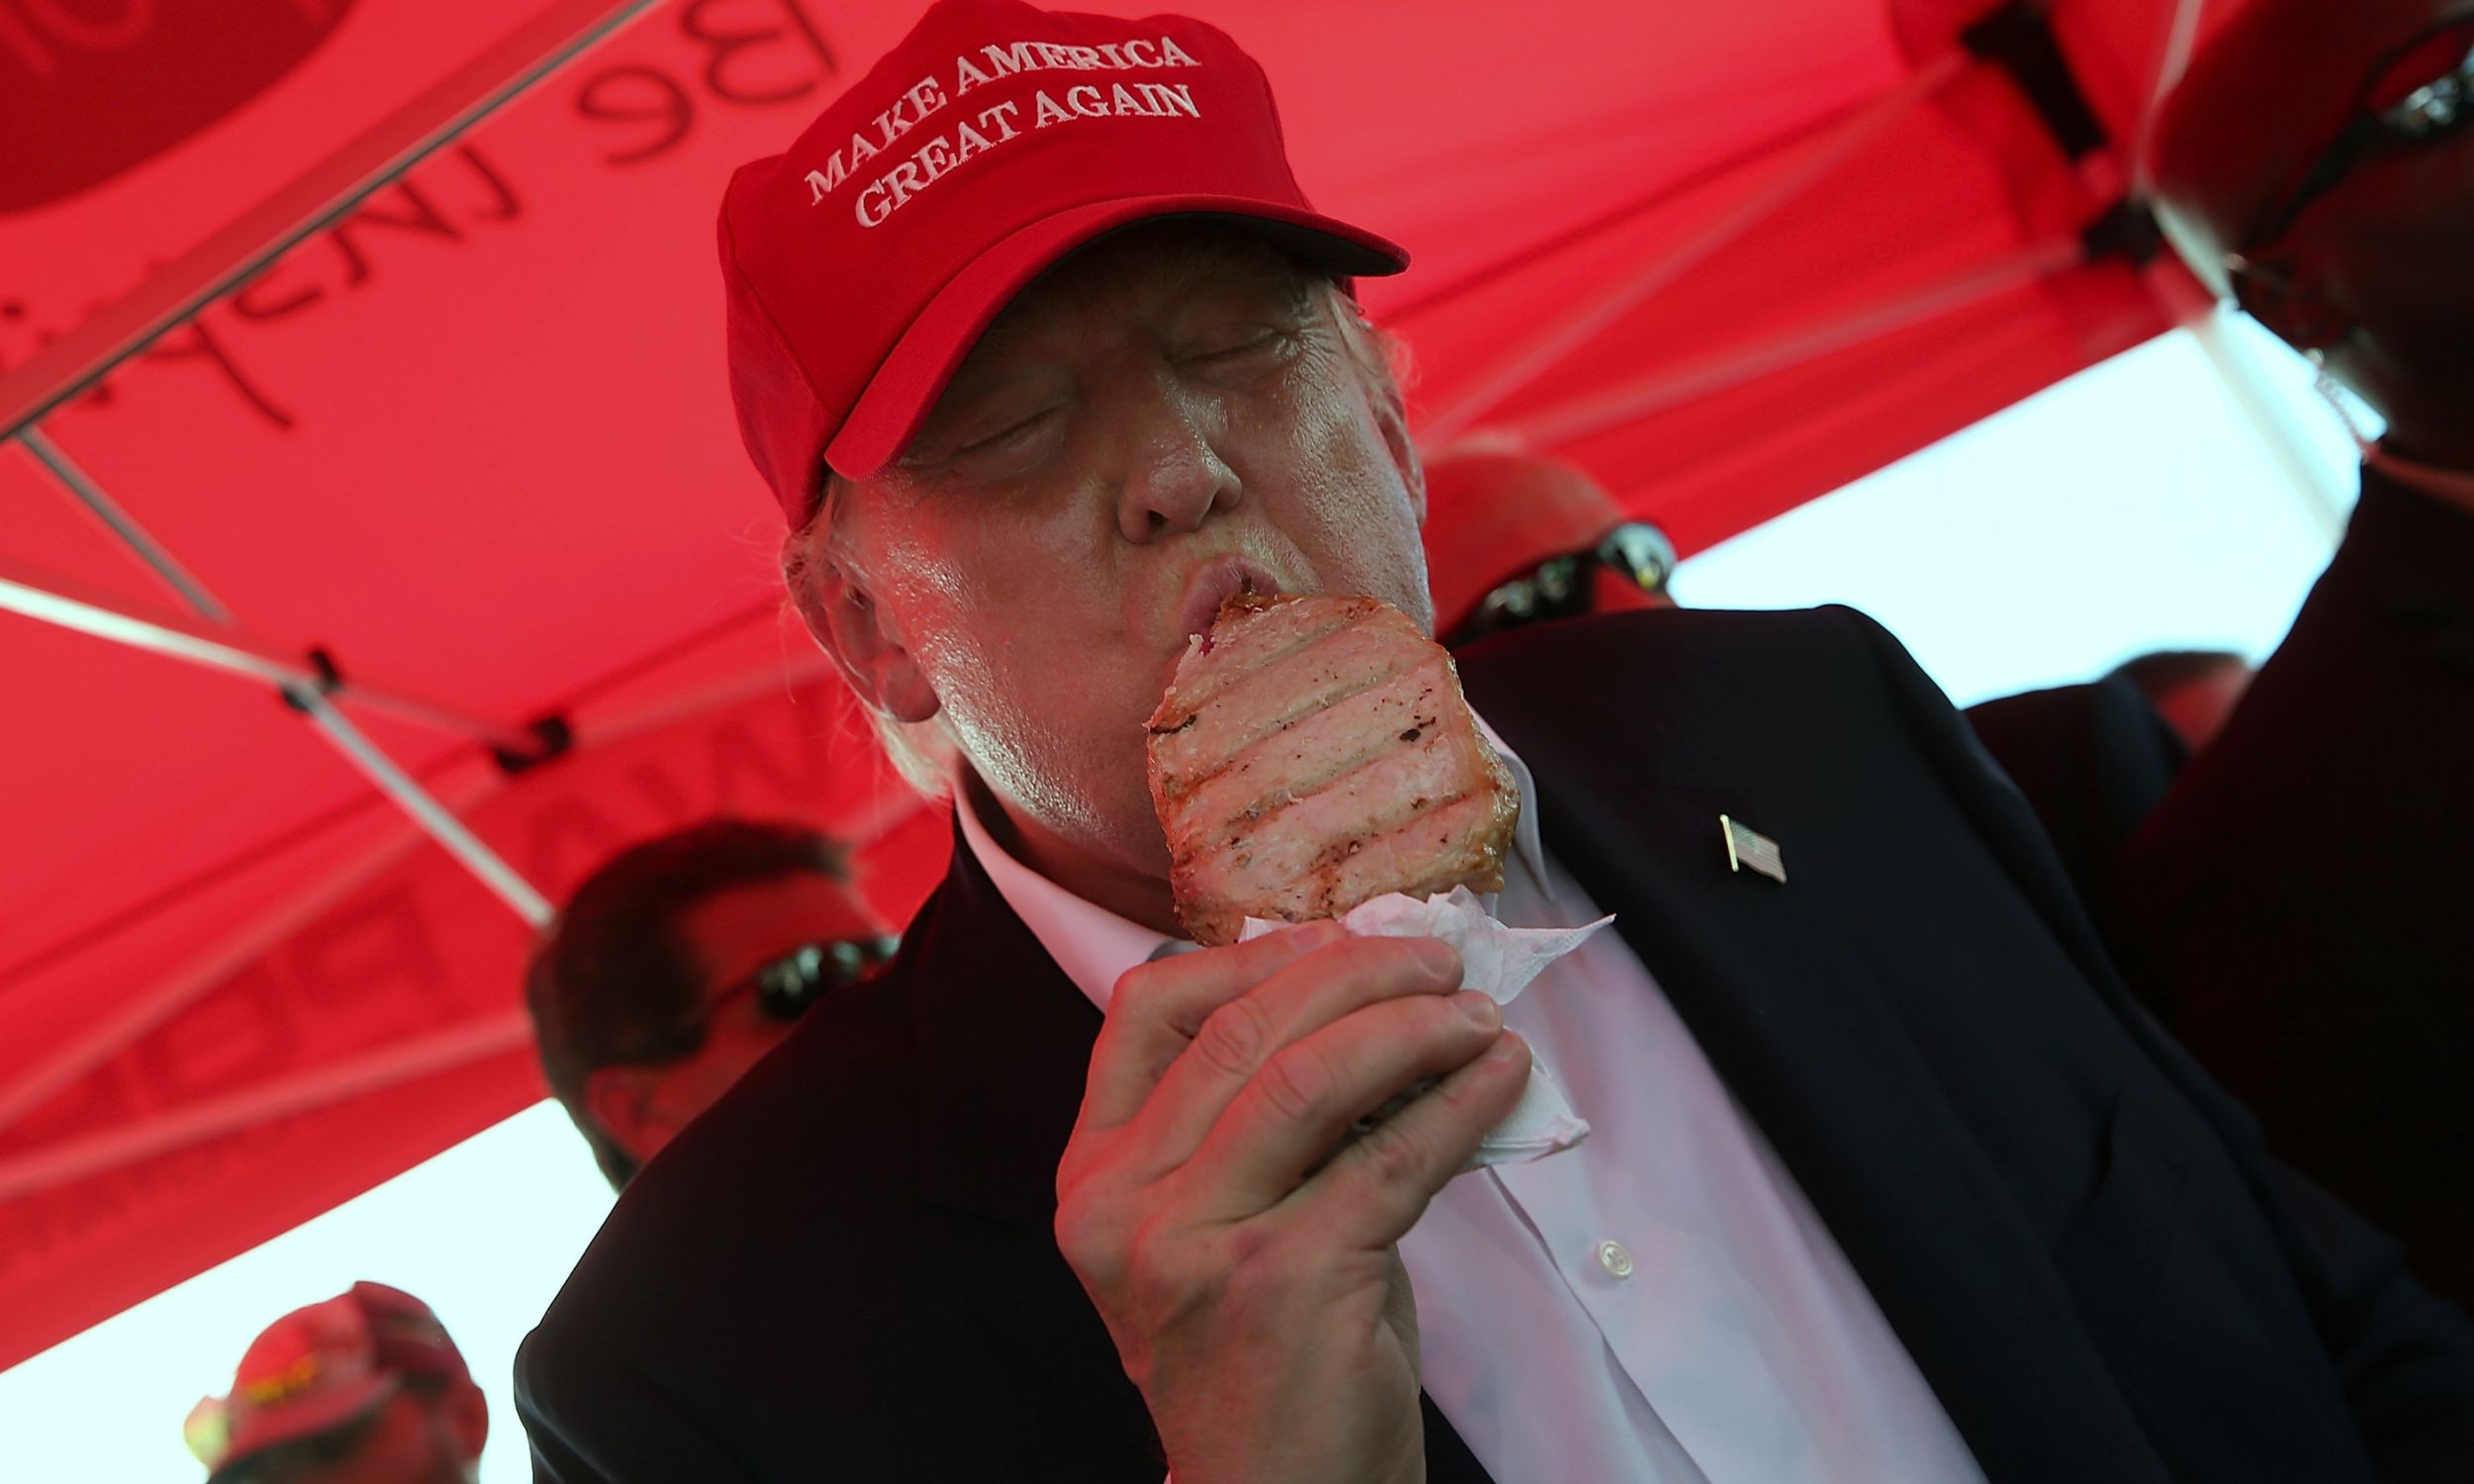 Des Moines, Iowa, 15 sierpnia 2015 r. Donald Trump, jeszcze jako republikański kandydat na prezydenta USA Part, zjada kotlet schabowy na patyku podczas targów Iowa State Fair. Prowadził kampanię i zwiedzał targi. Fot. Win McNamee / Getty Images